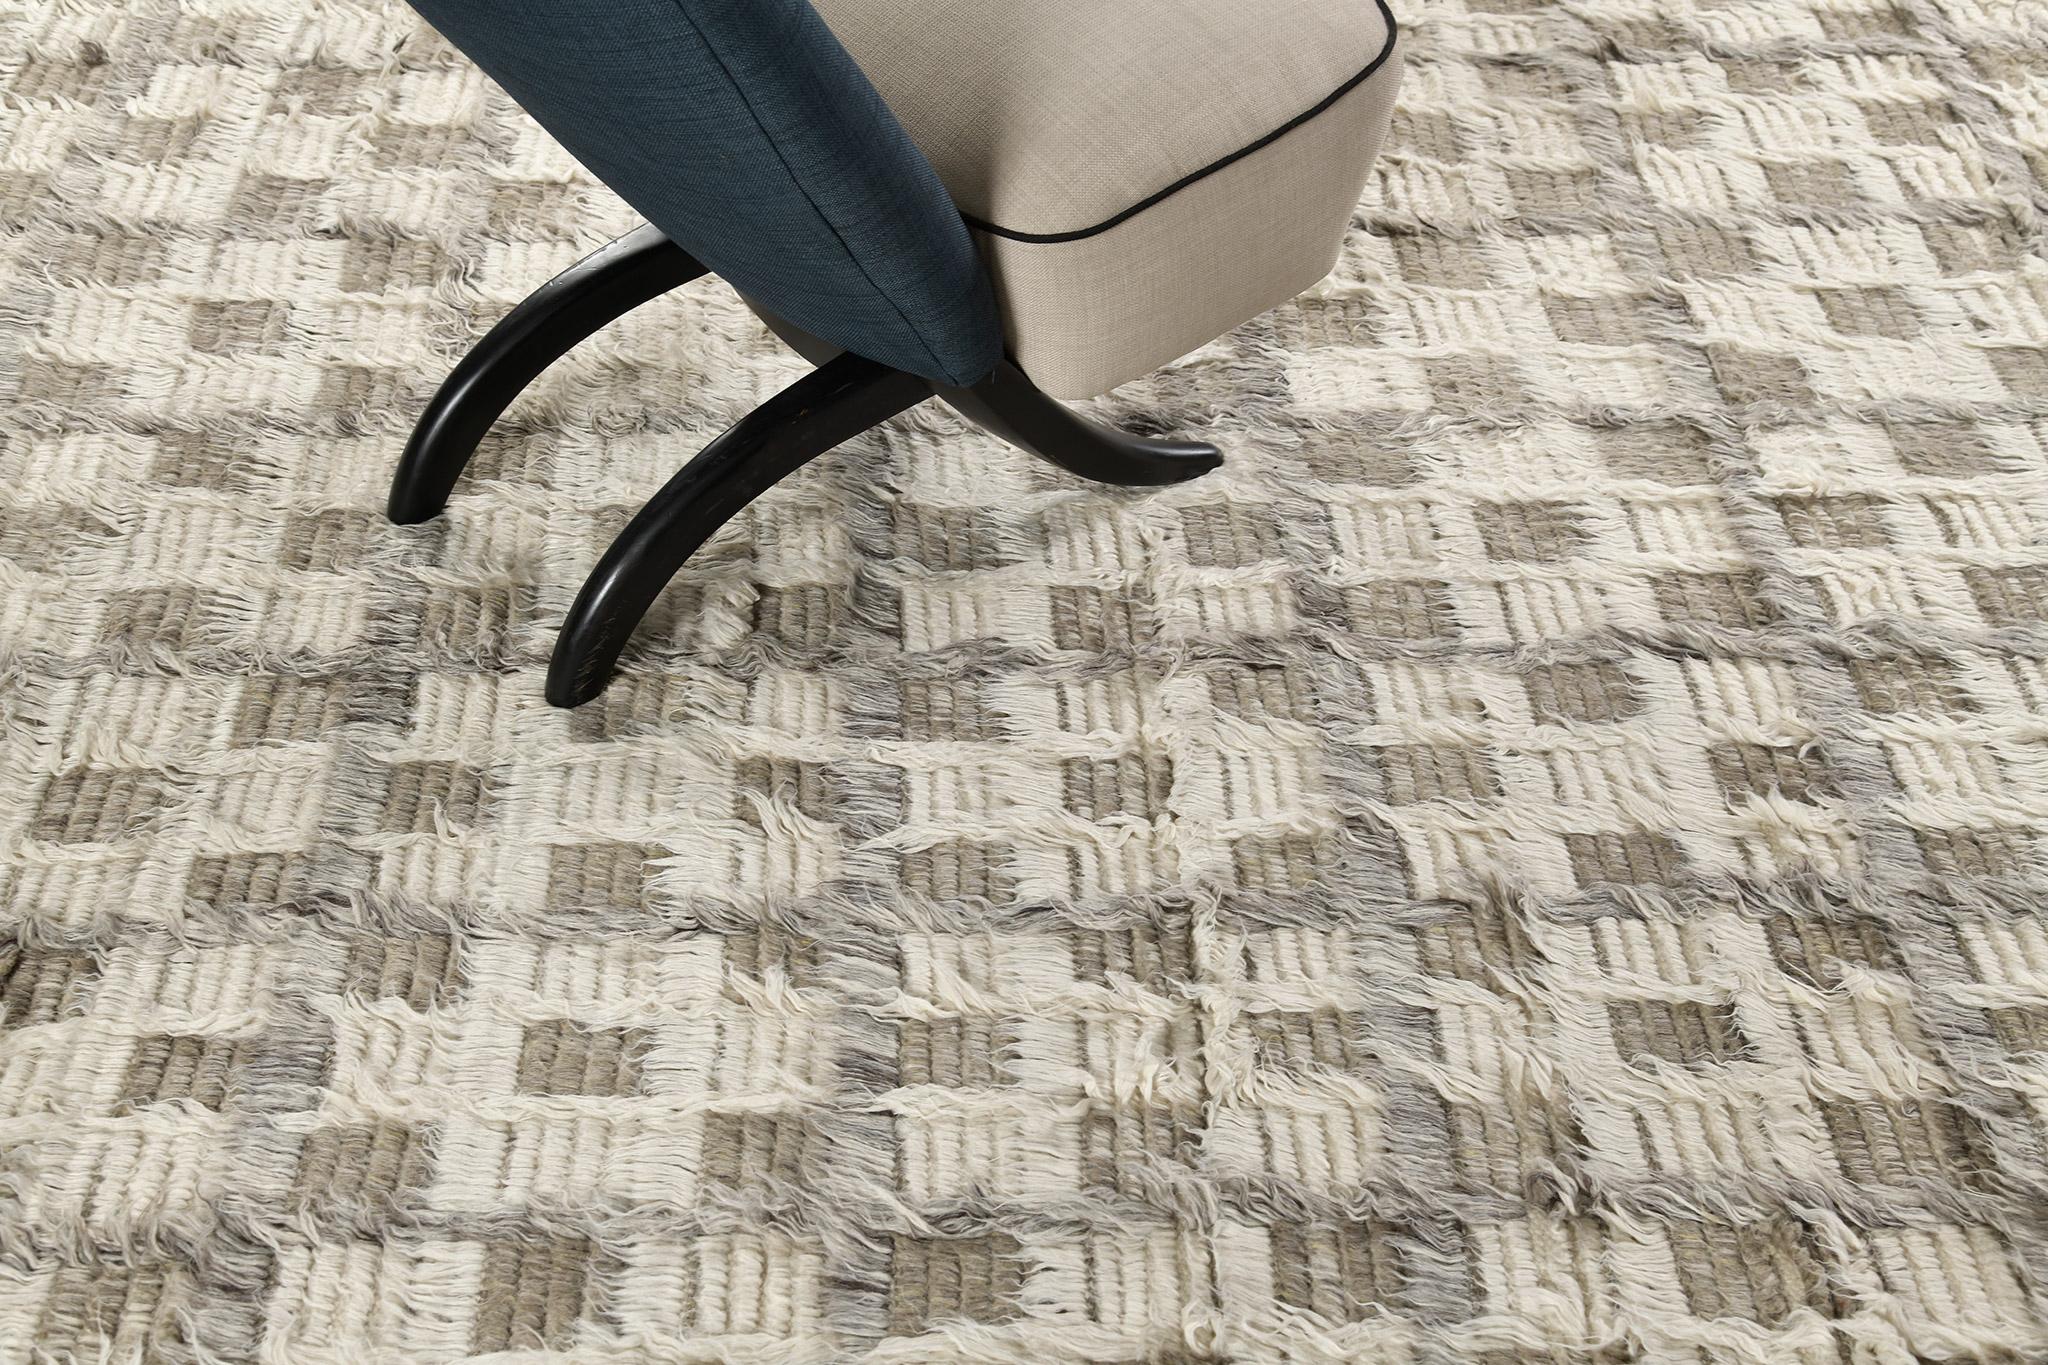 Der Teppich Miha zeichnet sich durch ein Schachbrettmotiv aus, das in einem mehrflorigen Design mit verschobenen tonalen Gitterlinien spielt. Dieses Stück ist in Elfenbein mit kühlen und khakifarbenen Grautönen gehalten. 

Die Sahara-Kollektion,